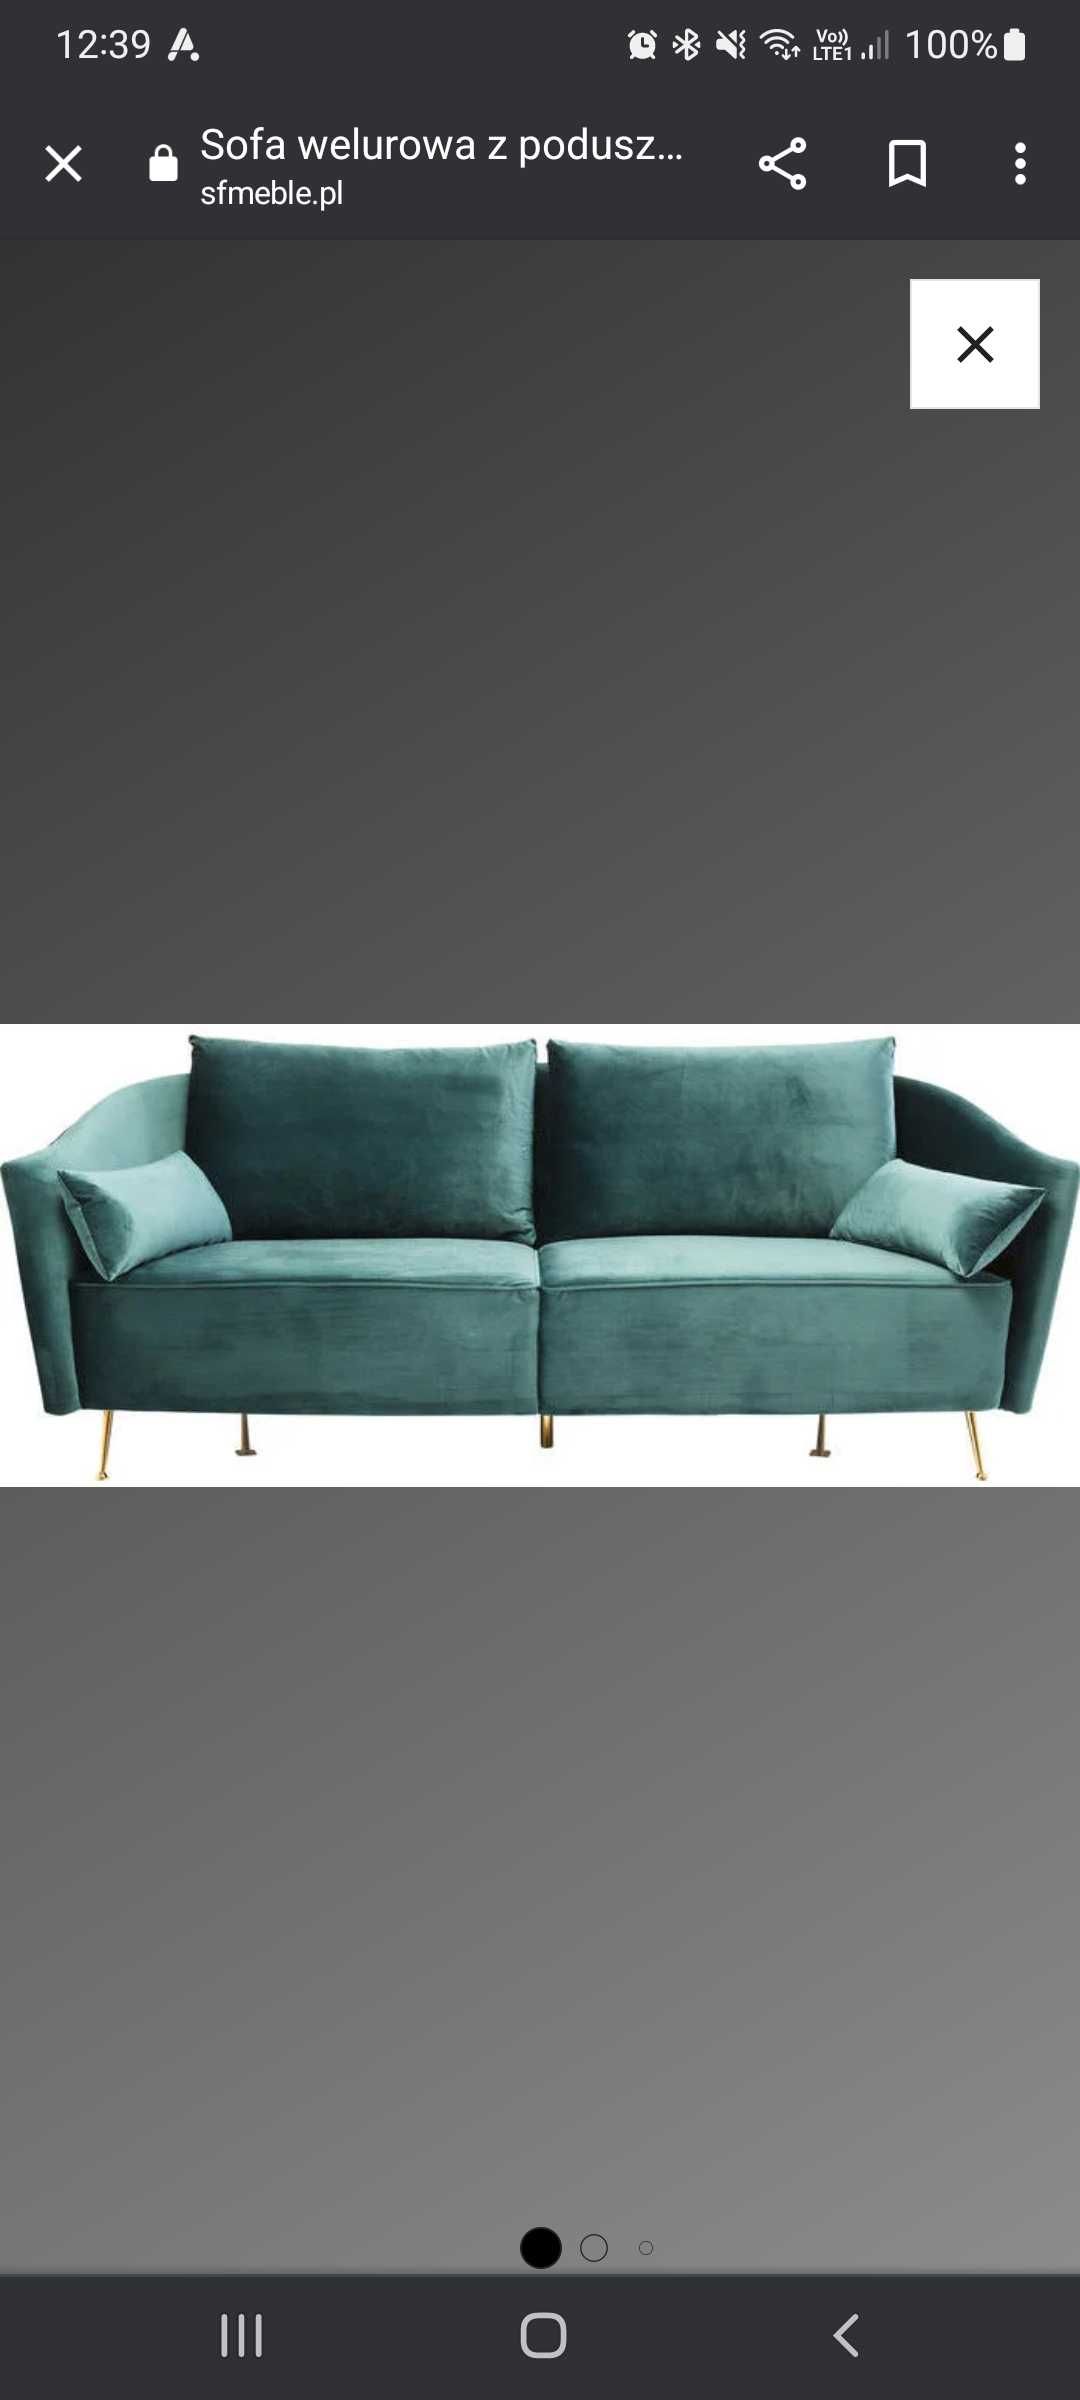 Sofa kare design vegas forever